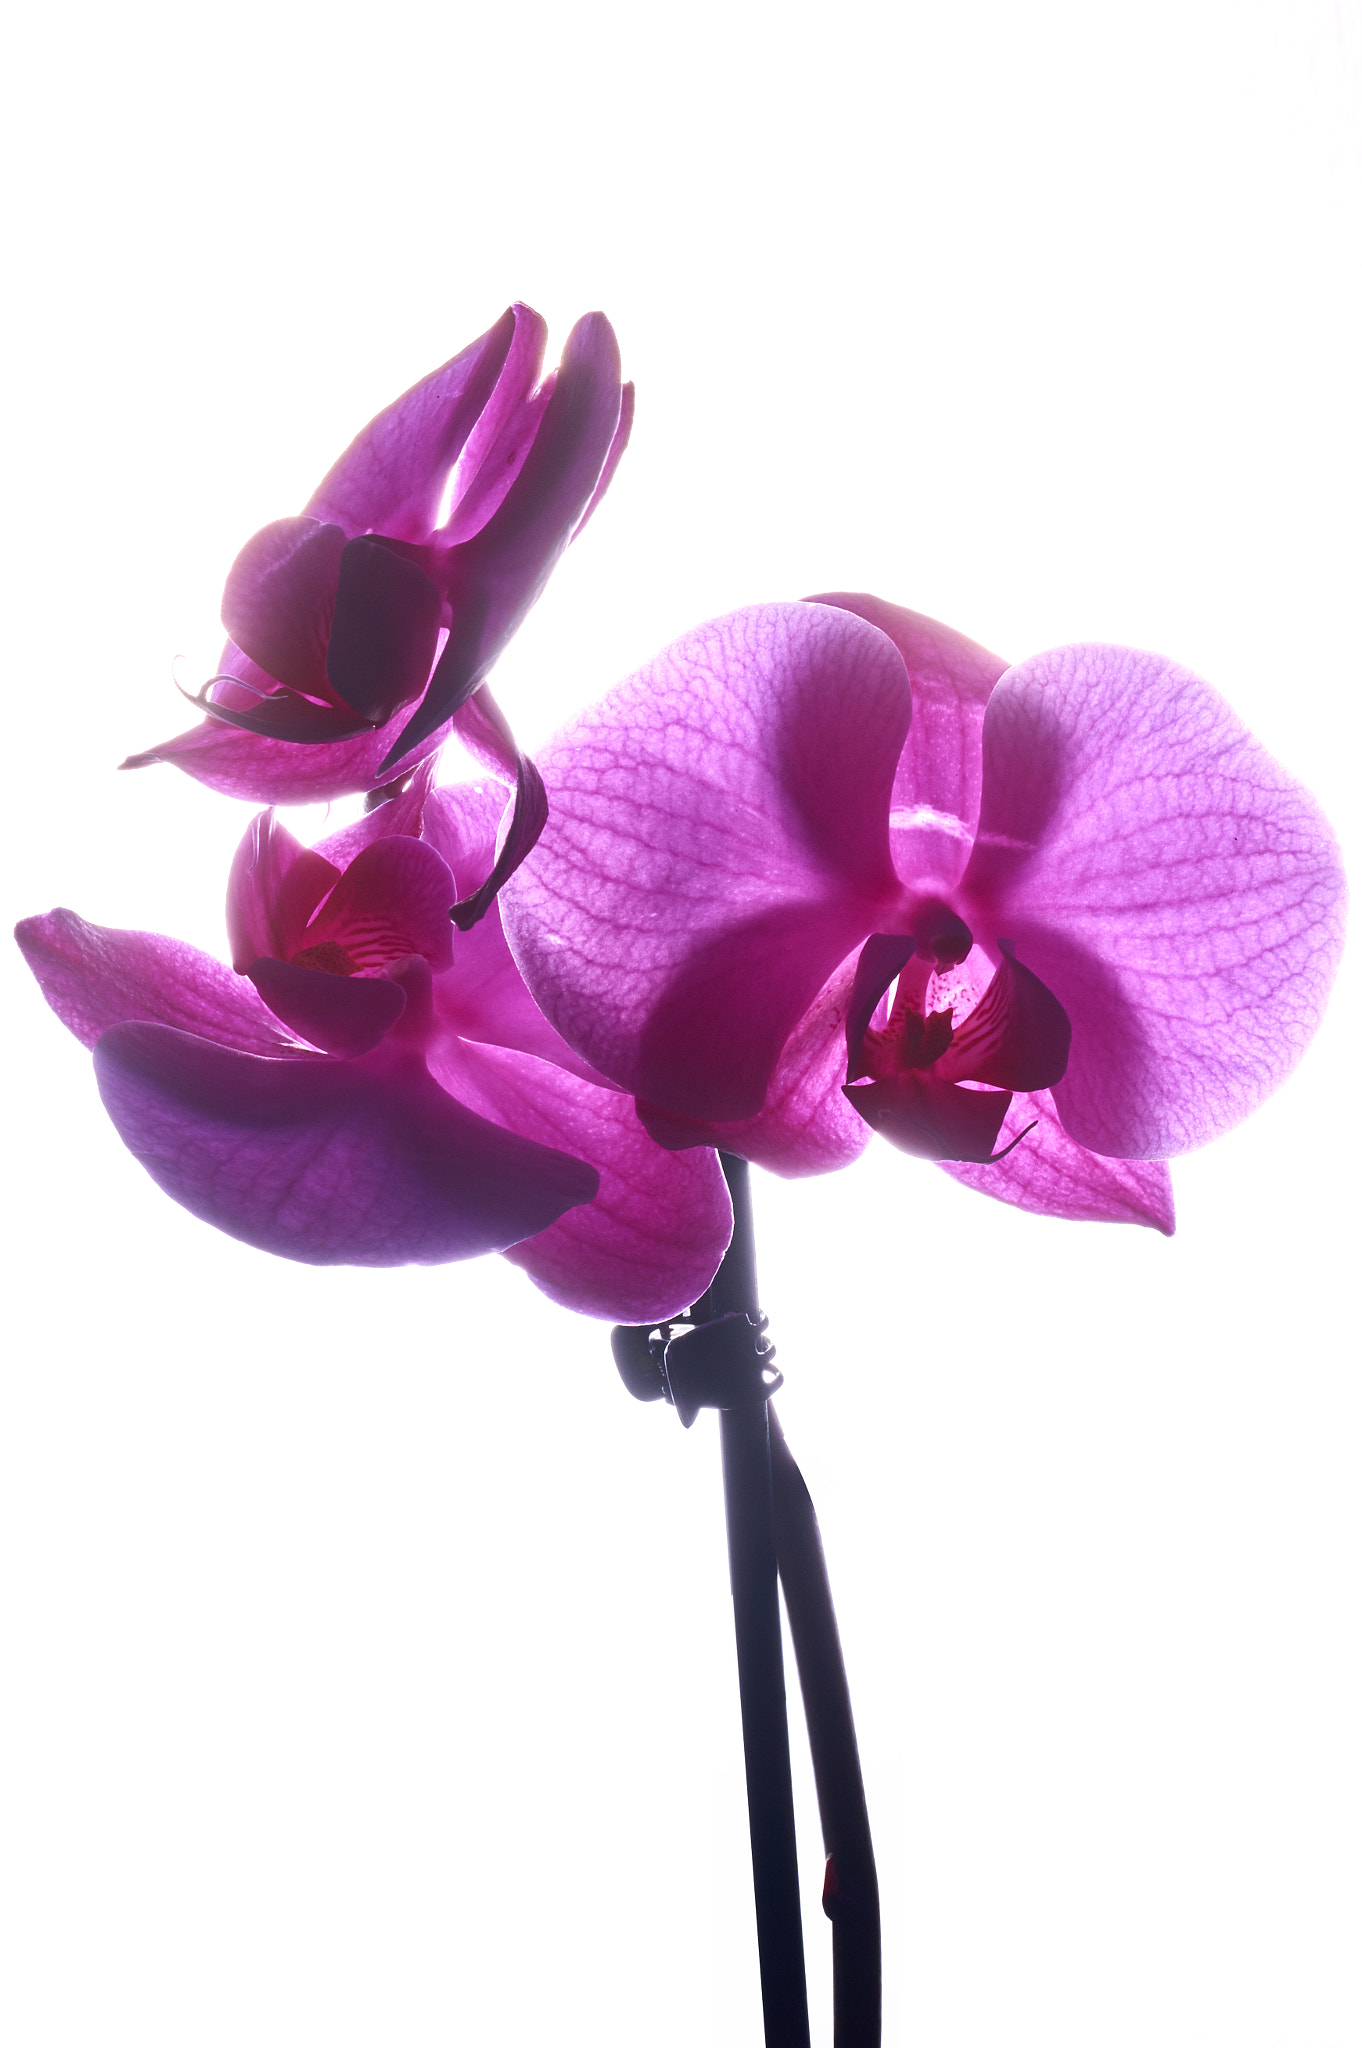 Nikon AF-S Nikkor 50mm F1.8G sample photo. Orchidea photography